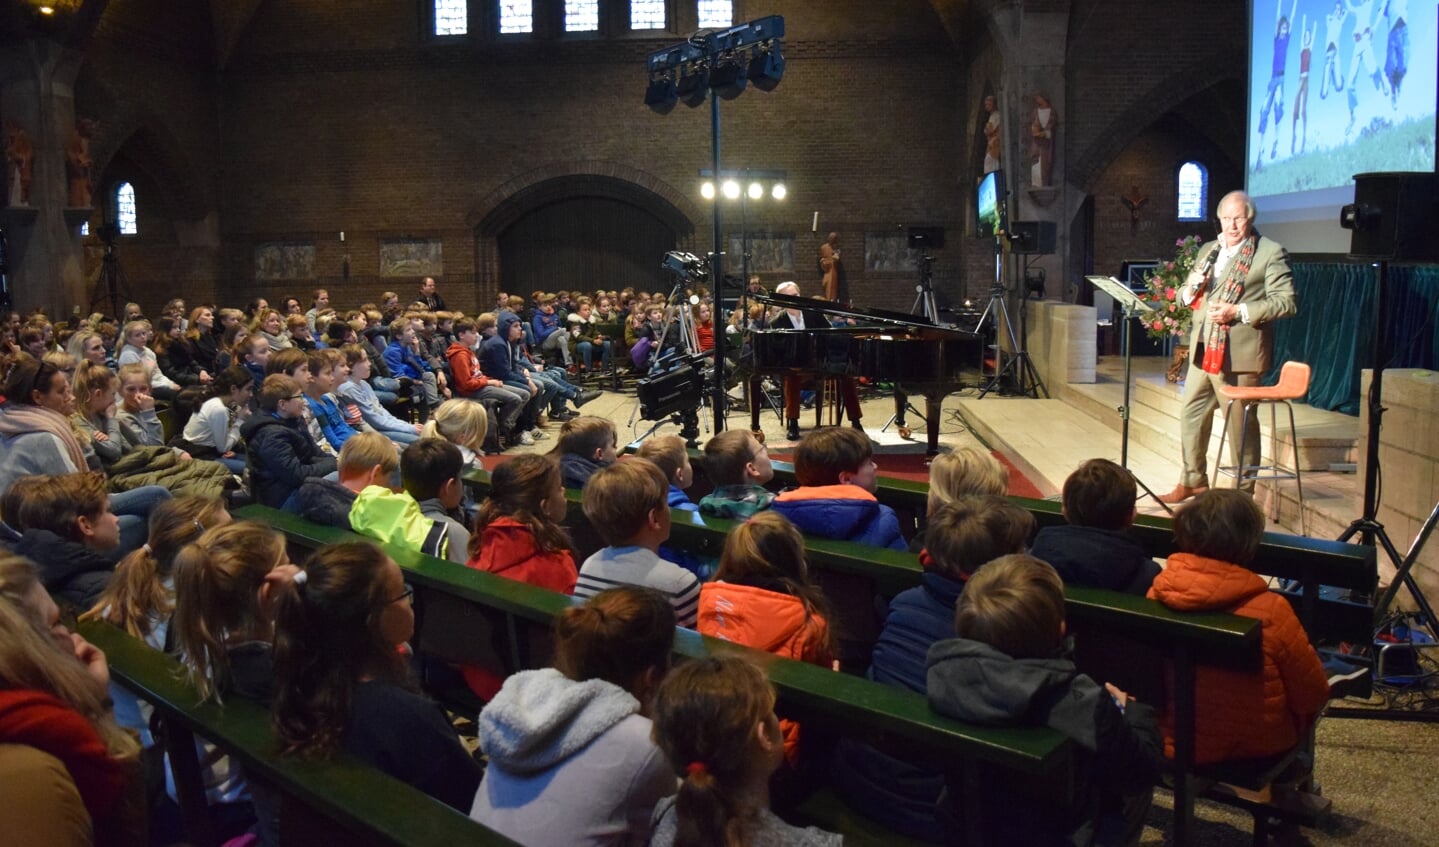  Vrijdag 19 januari kwamen 1.200 leerlingen, in drie groepen, uit de gemeente De Bilt naar de voorstelling van Edwin Rutten, in de OLV Kerk in Bilthoven.